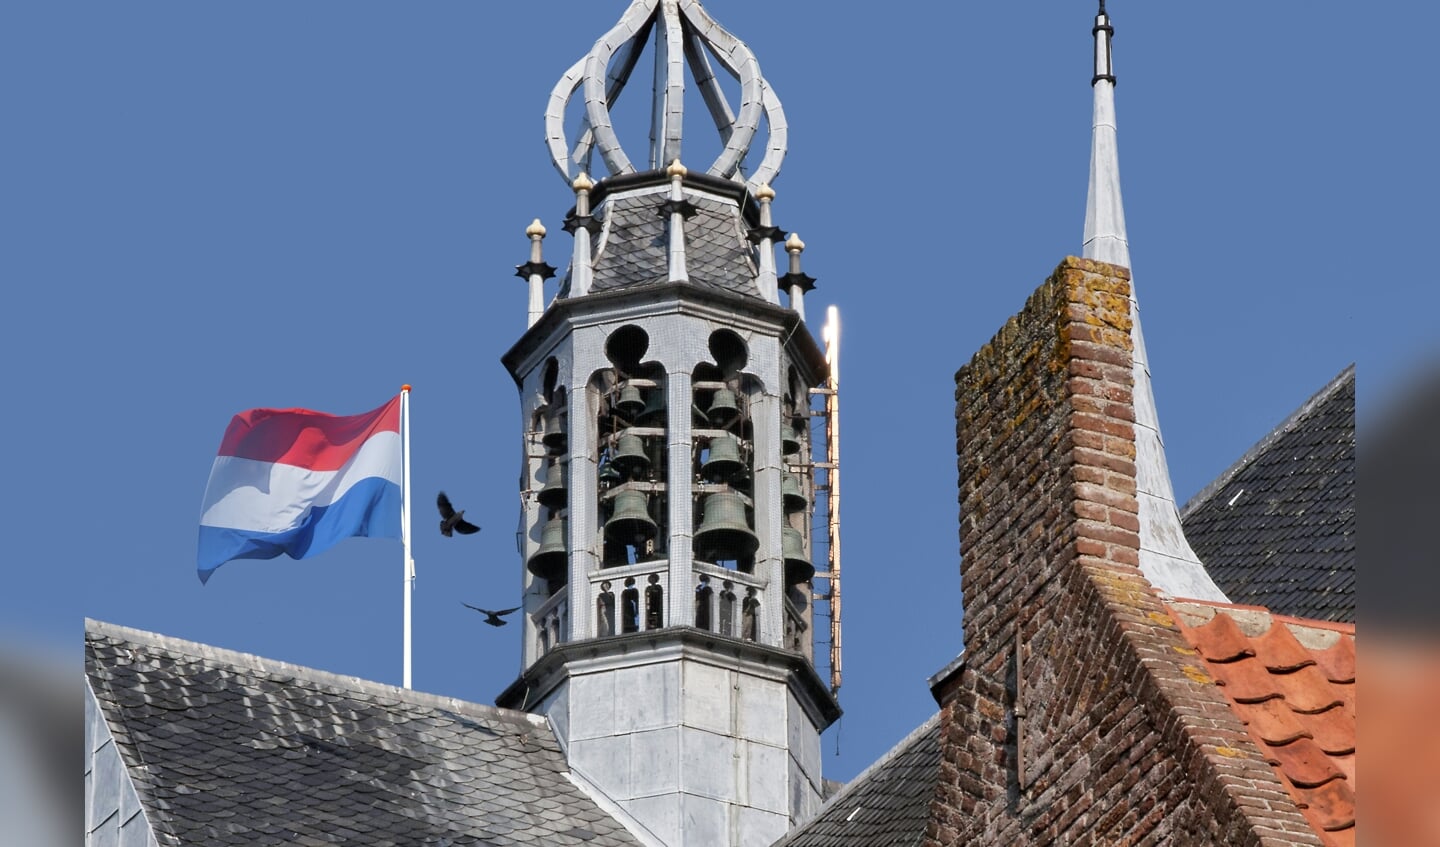 Beiaard vieringstoren Harderwijk